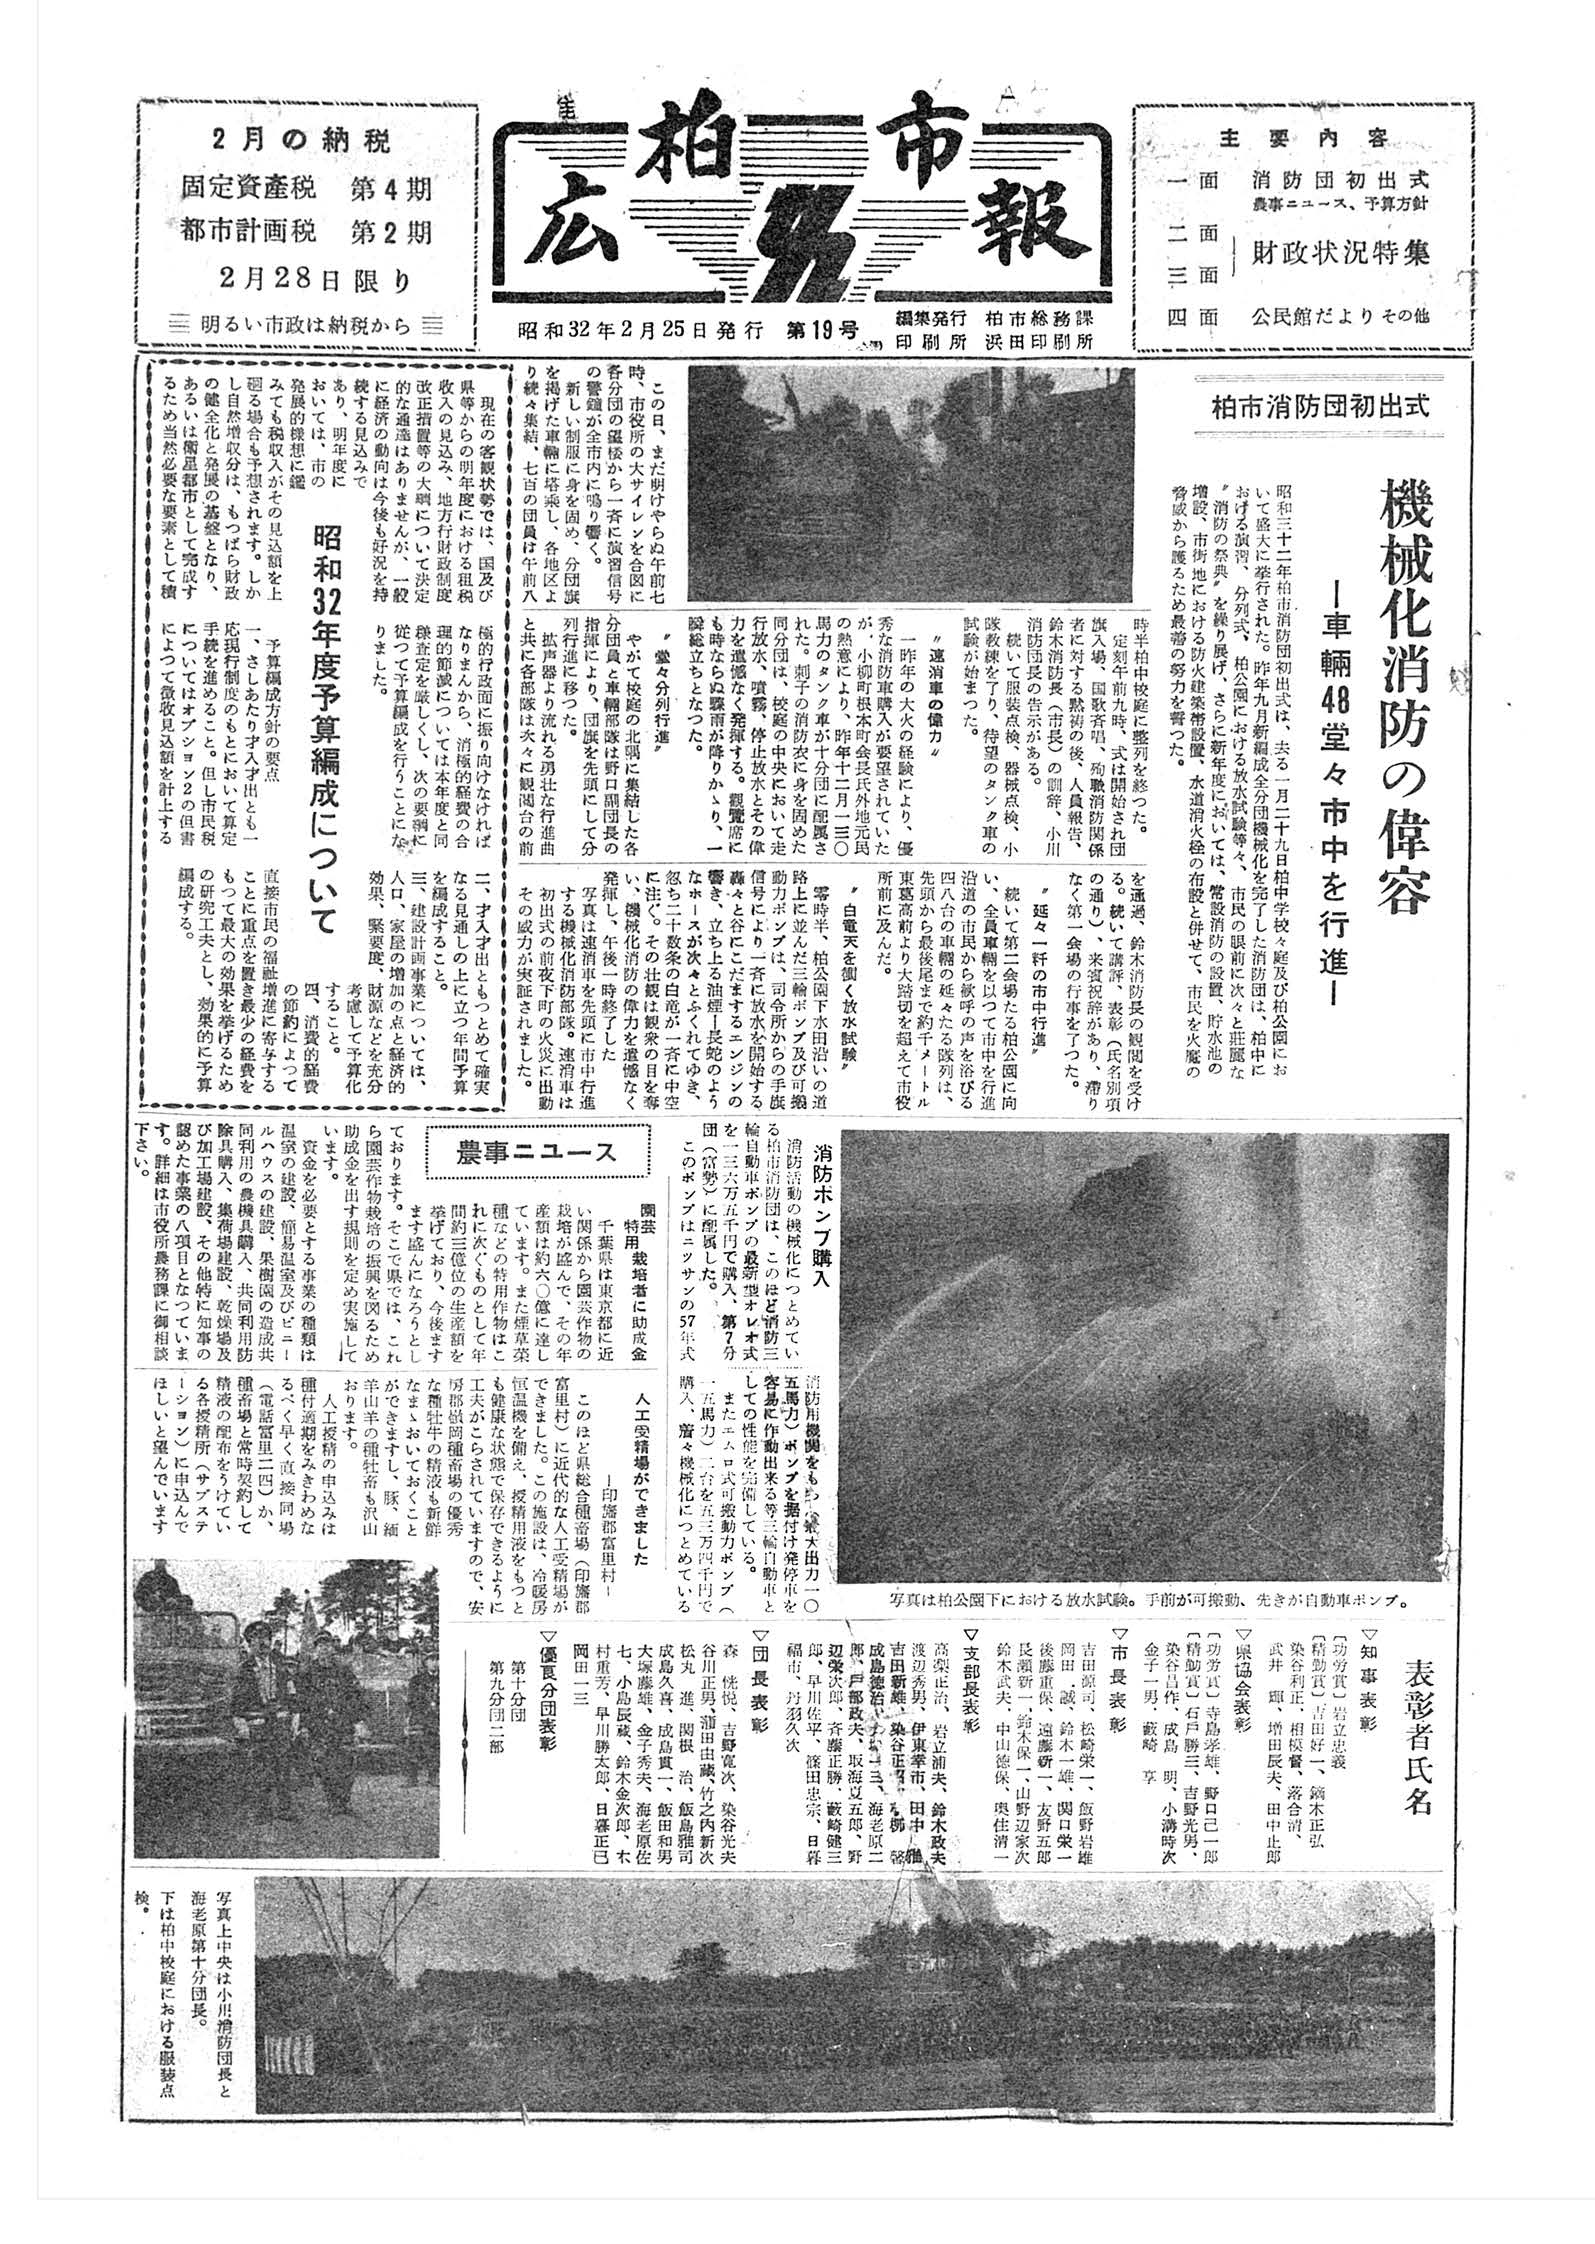 広報かしわ　昭和32年2月25日発行　19号